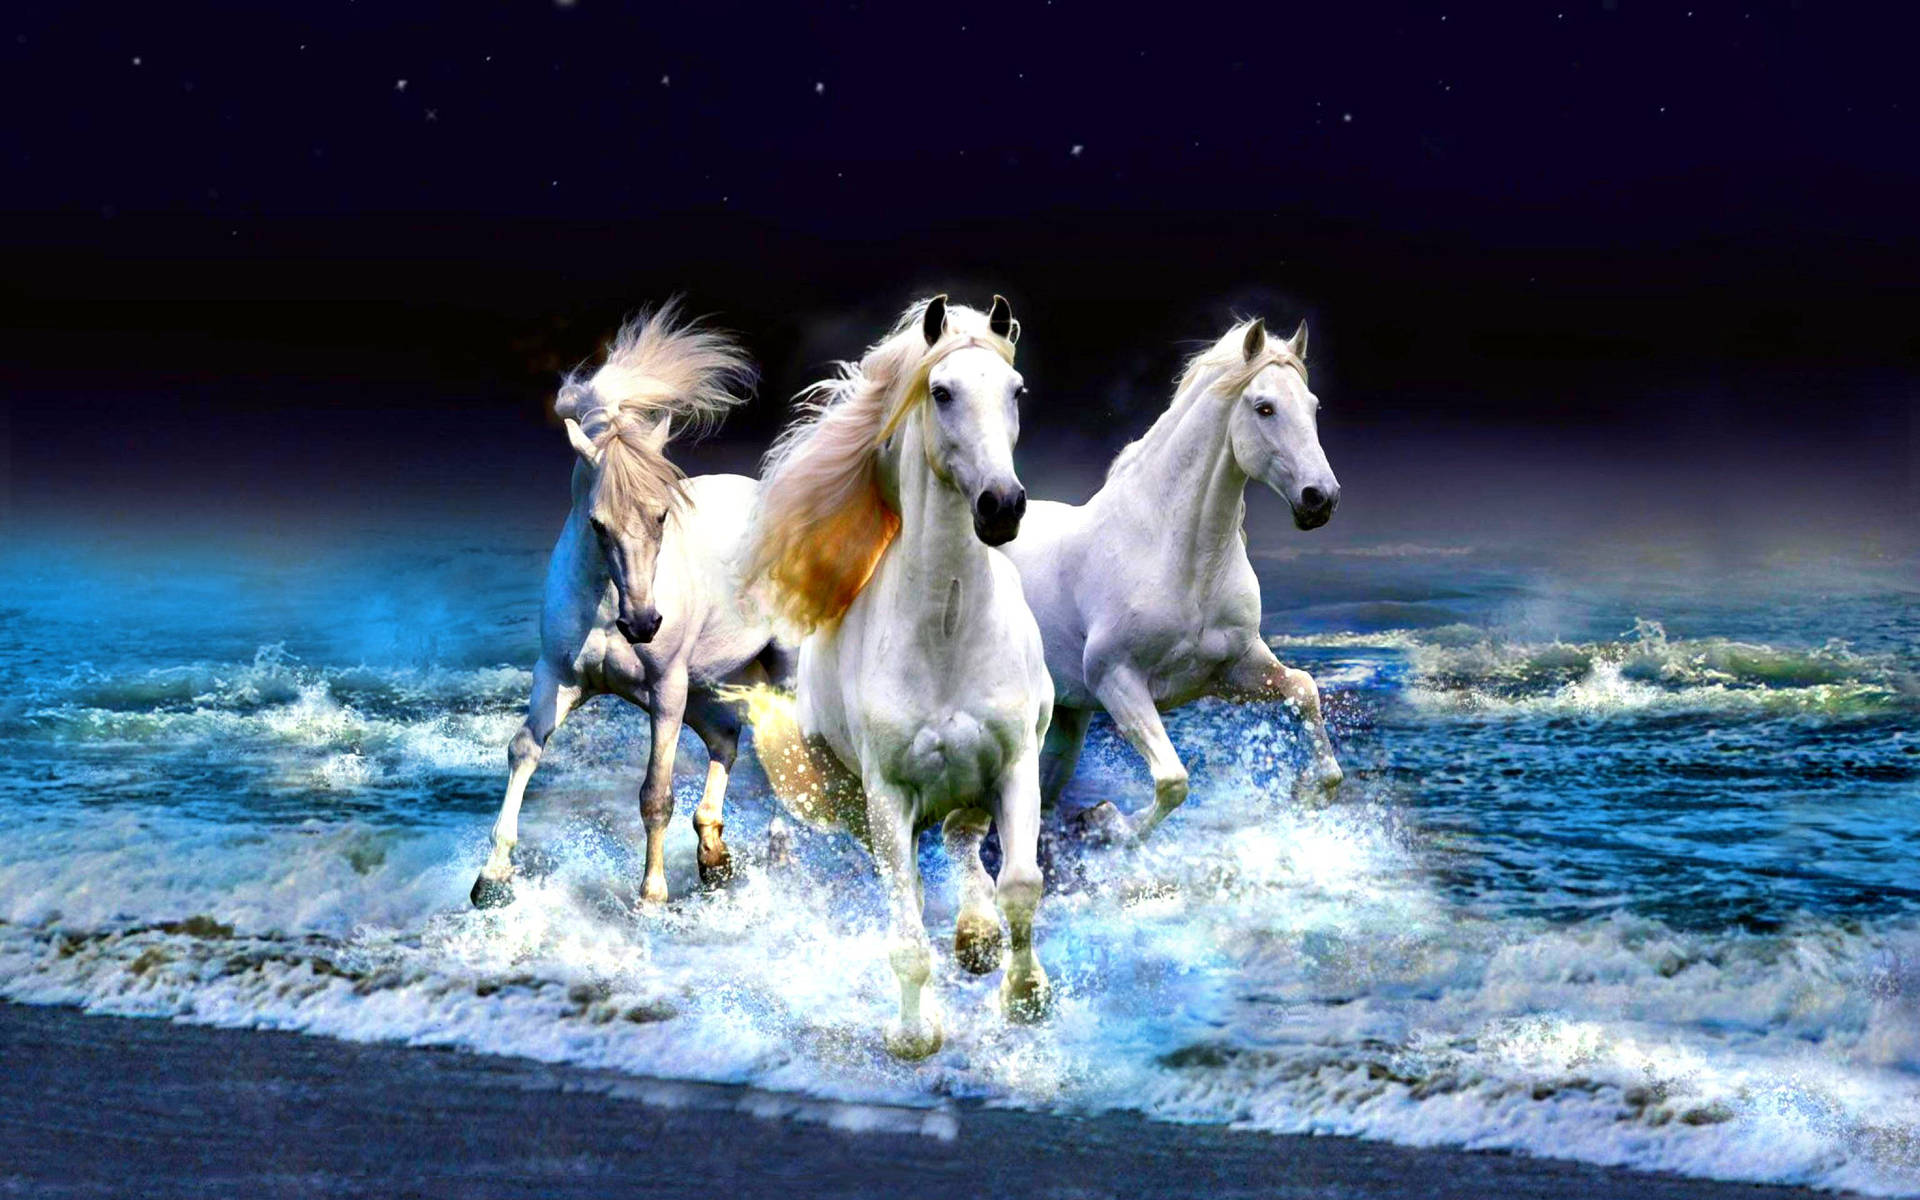 Horses On Beach Waves